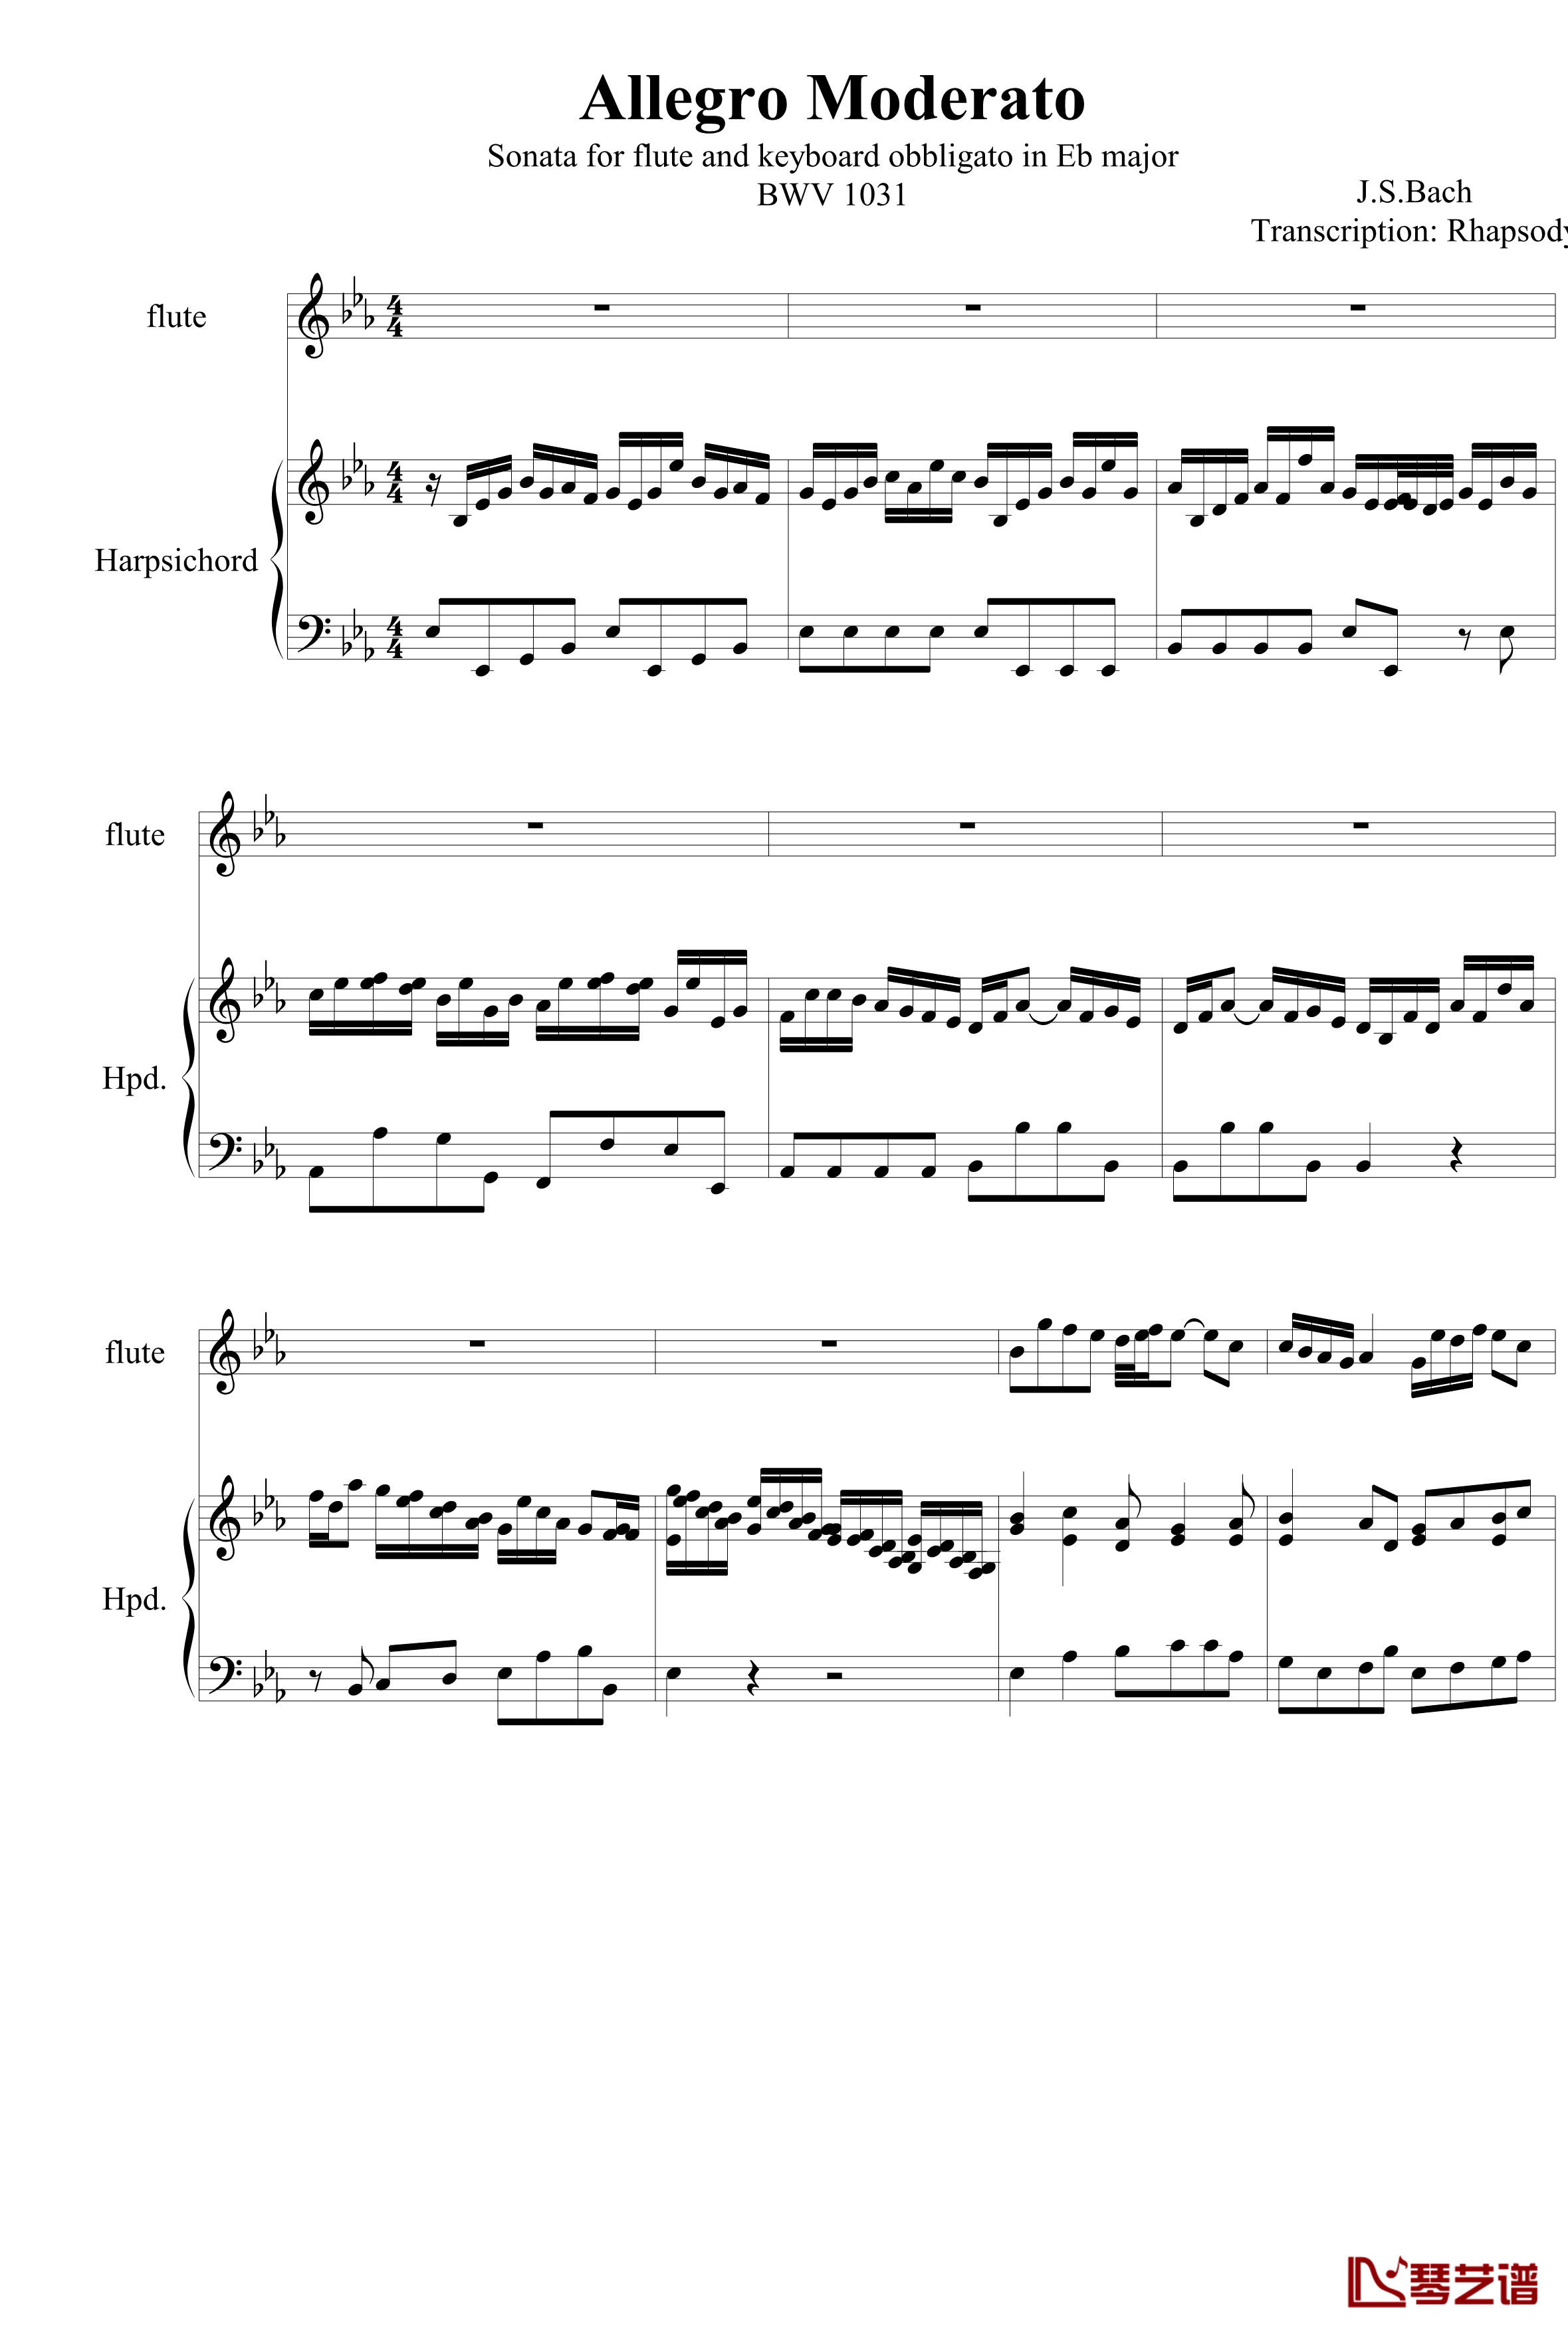 羽管键琴协奏曲BWV1031第一乐章钢琴谱-巴赫-P.E.Bach1